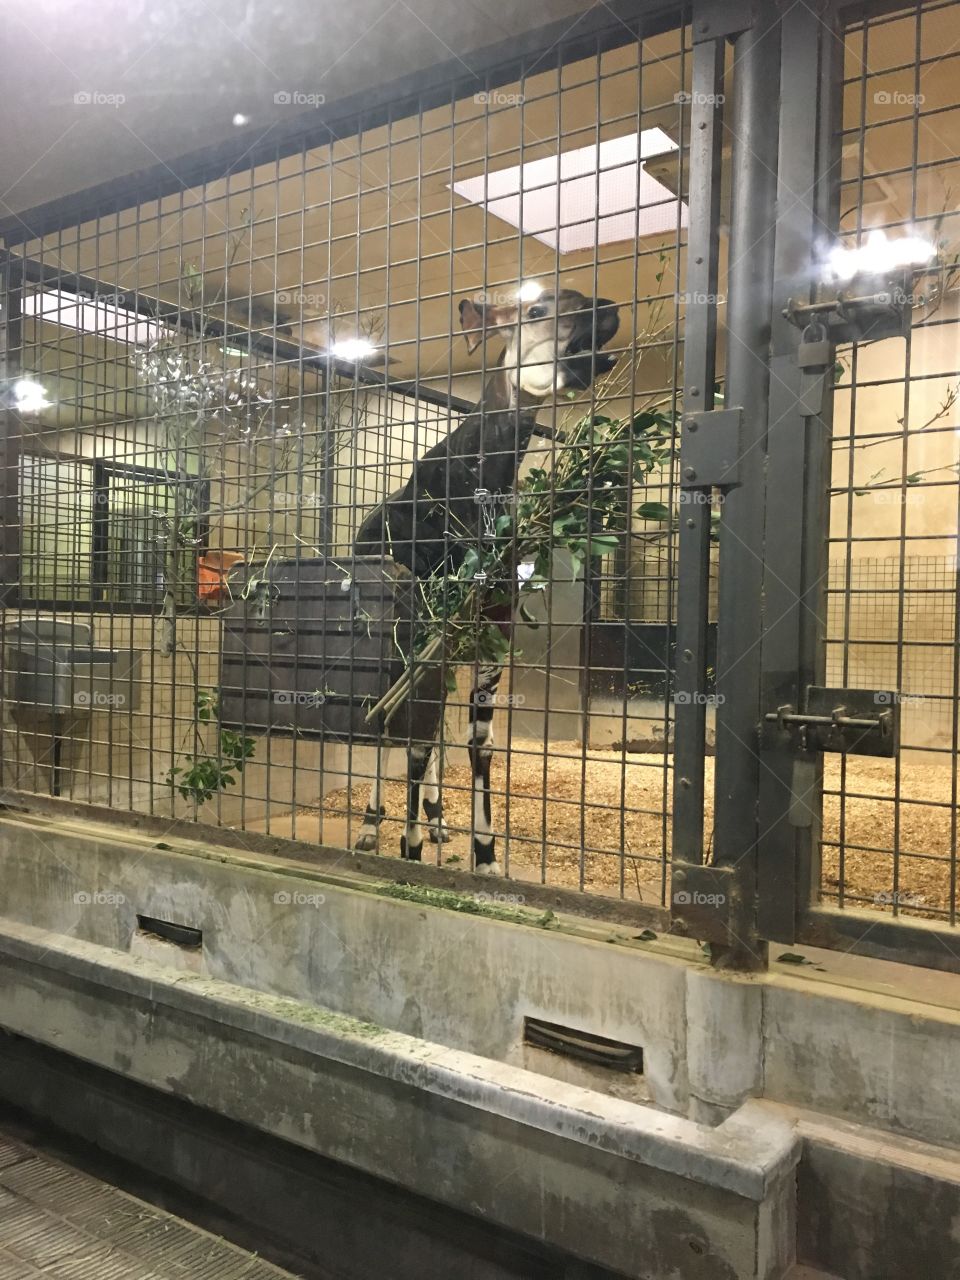 Okapi at Ueno Zoo